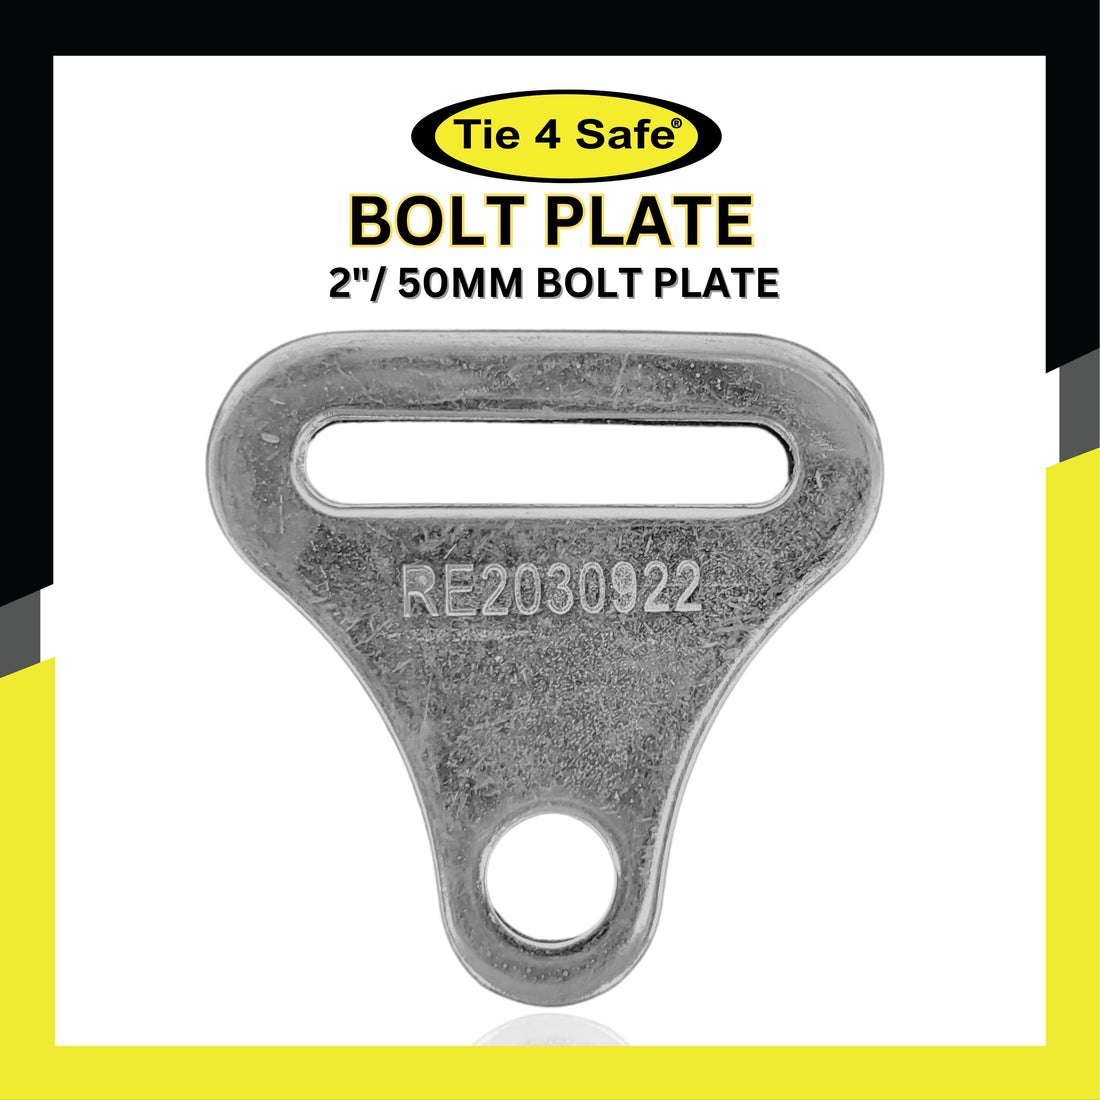 2"/ 50mm Bolt Plate